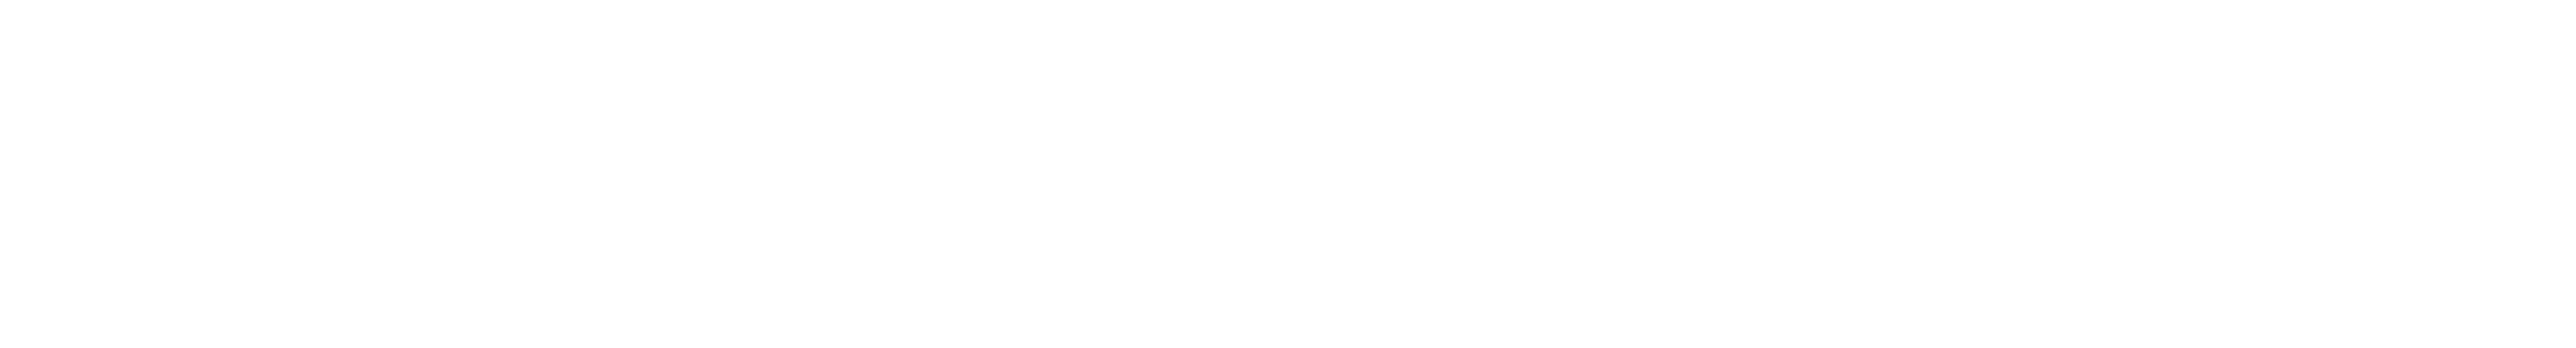 NeoSync